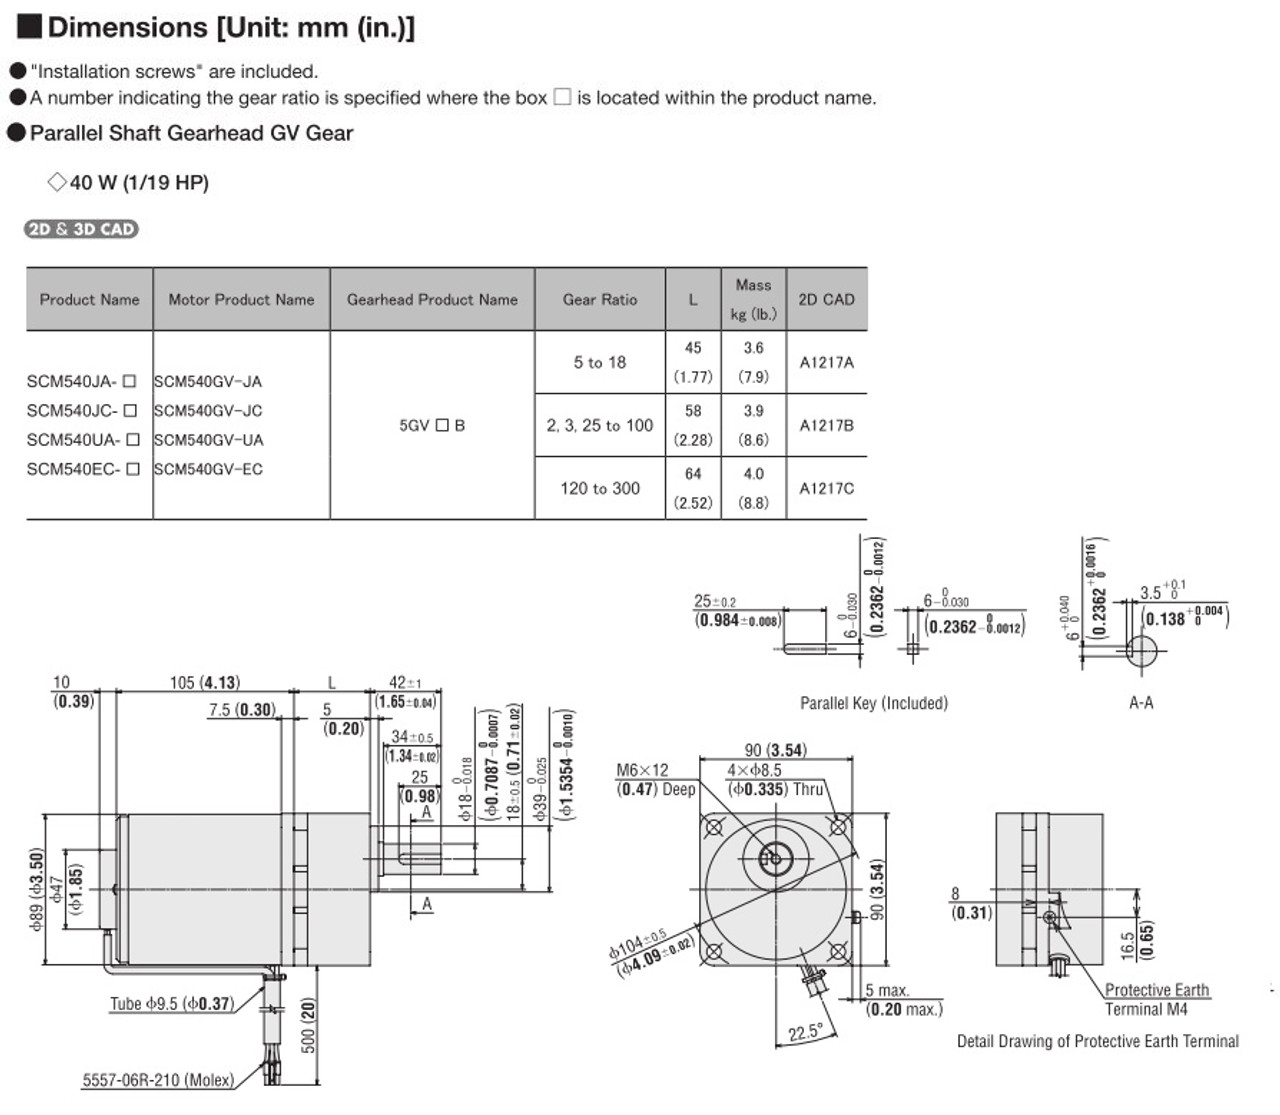 SCM540EC-18 - Dimensions